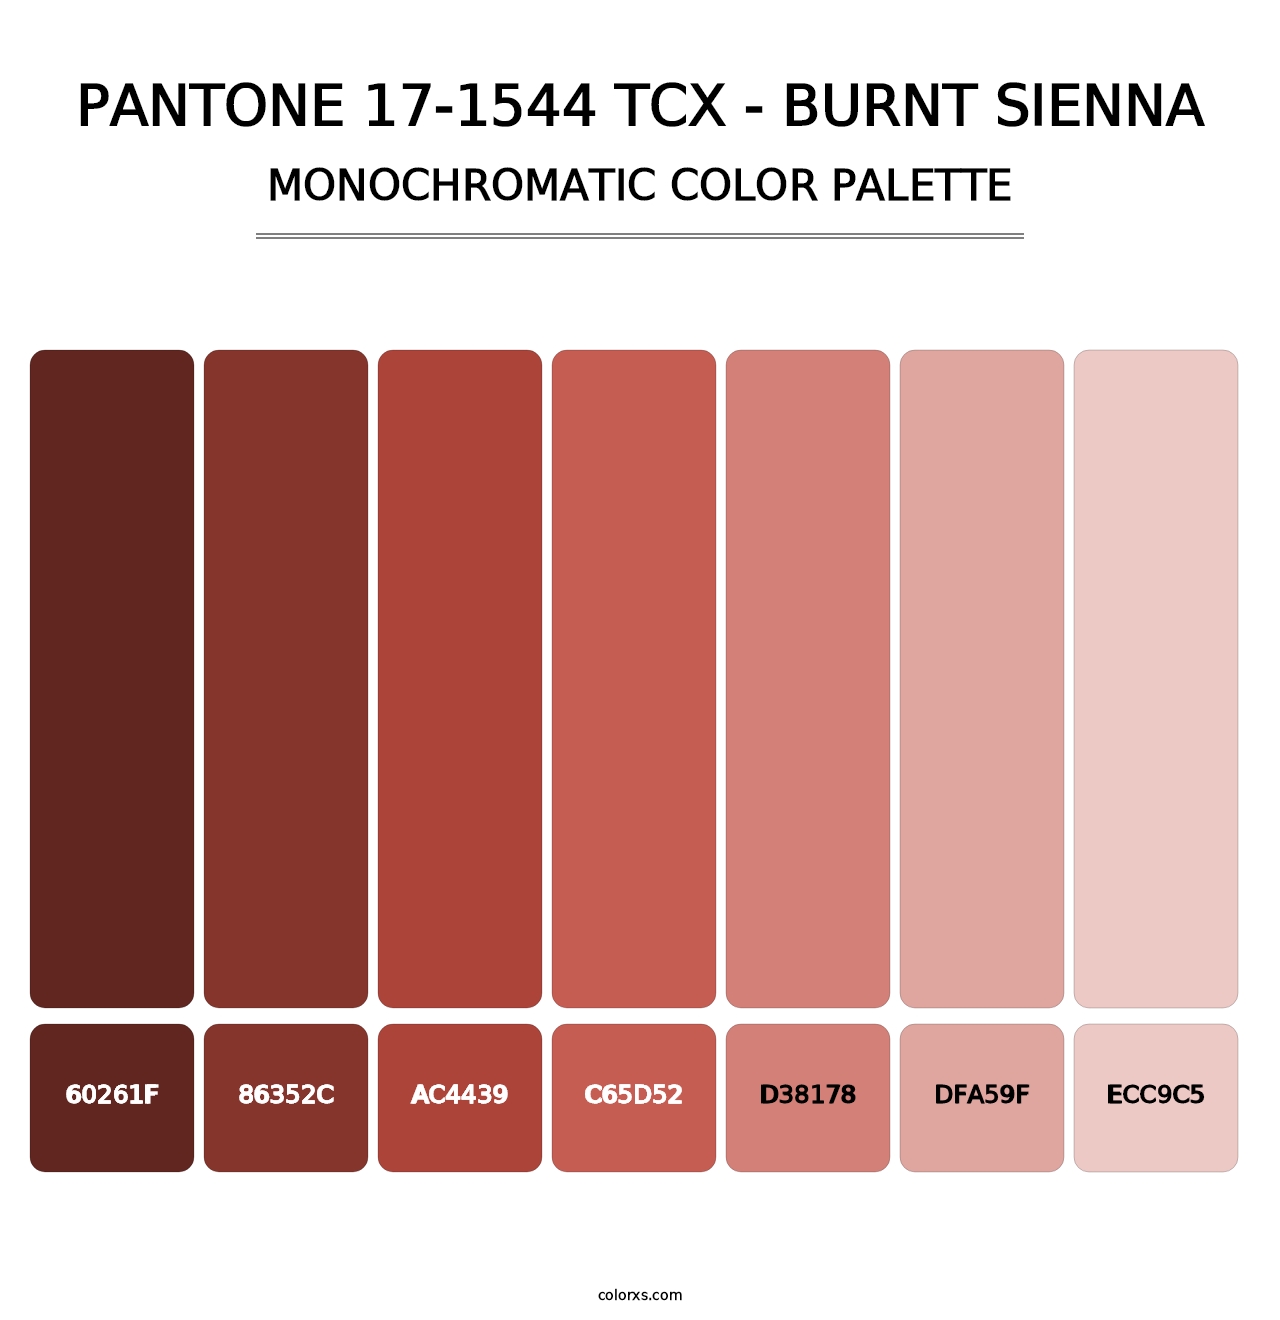 PANTONE 17-1544 TCX - Burnt Sienna - Monochromatic Color Palette